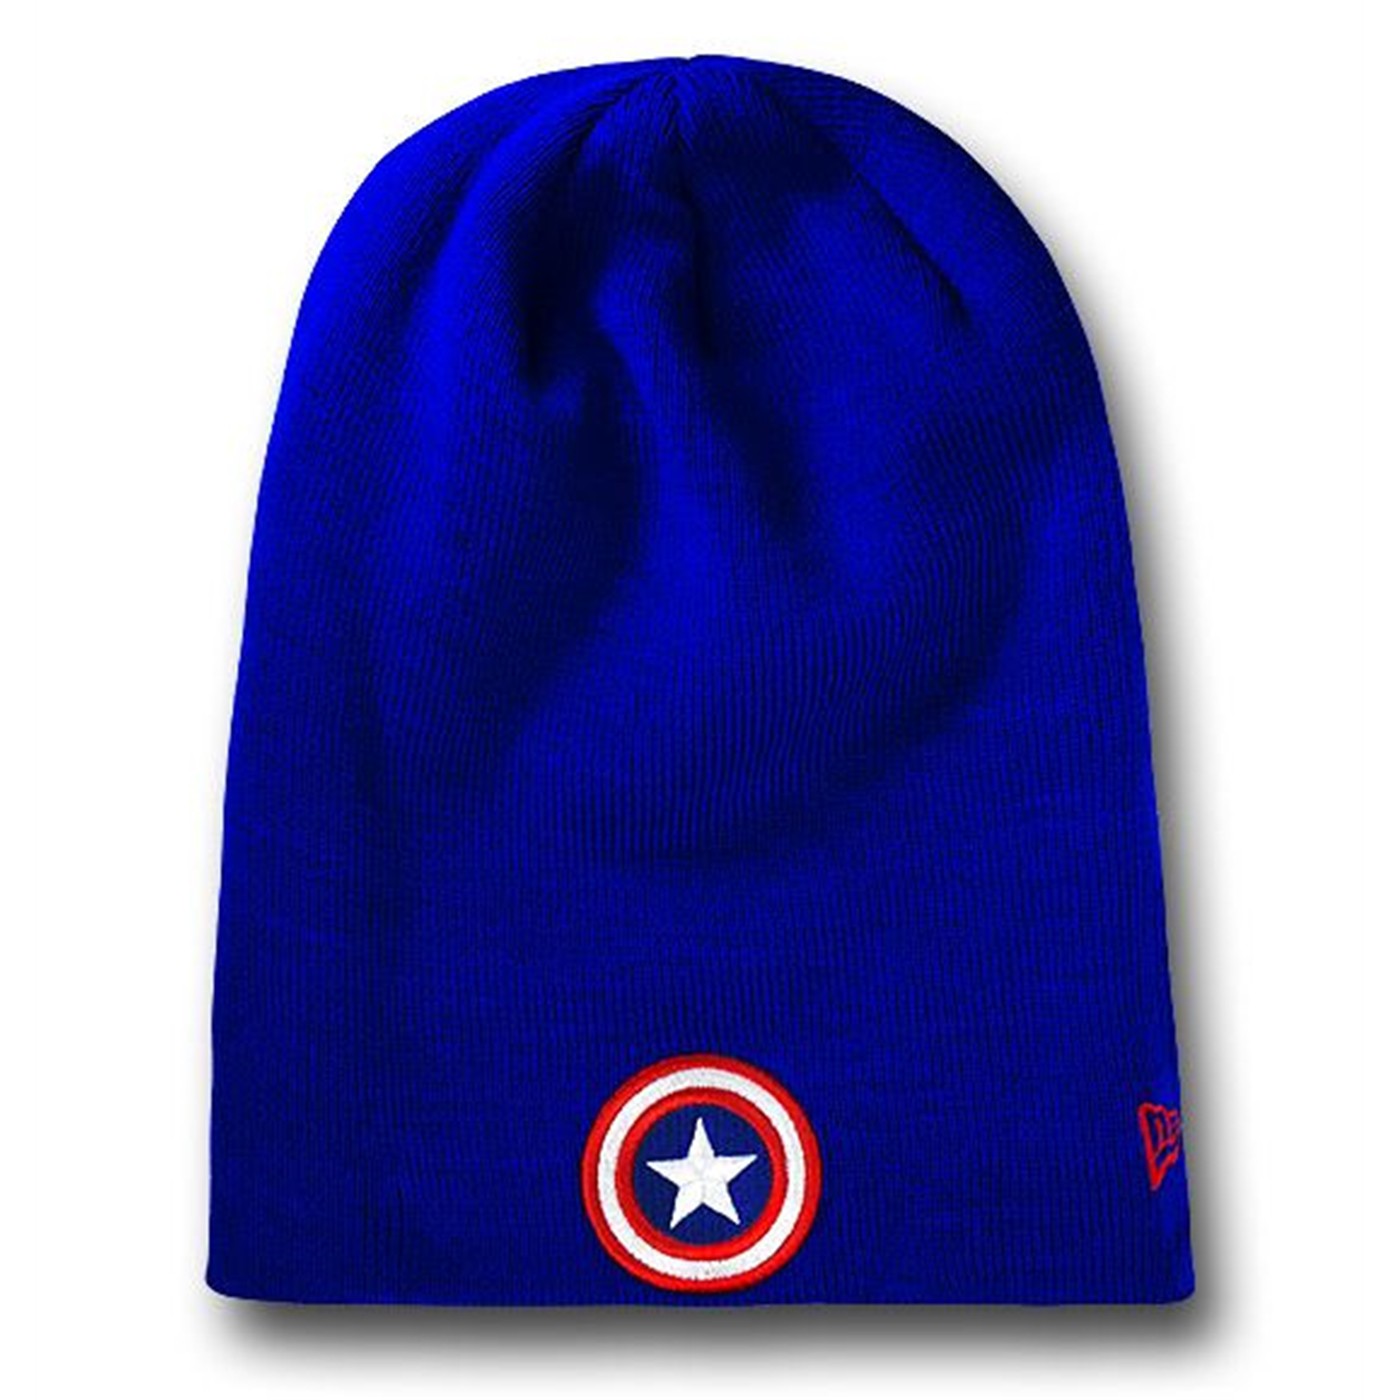 Captain America Symbol Flip It Up Beanie